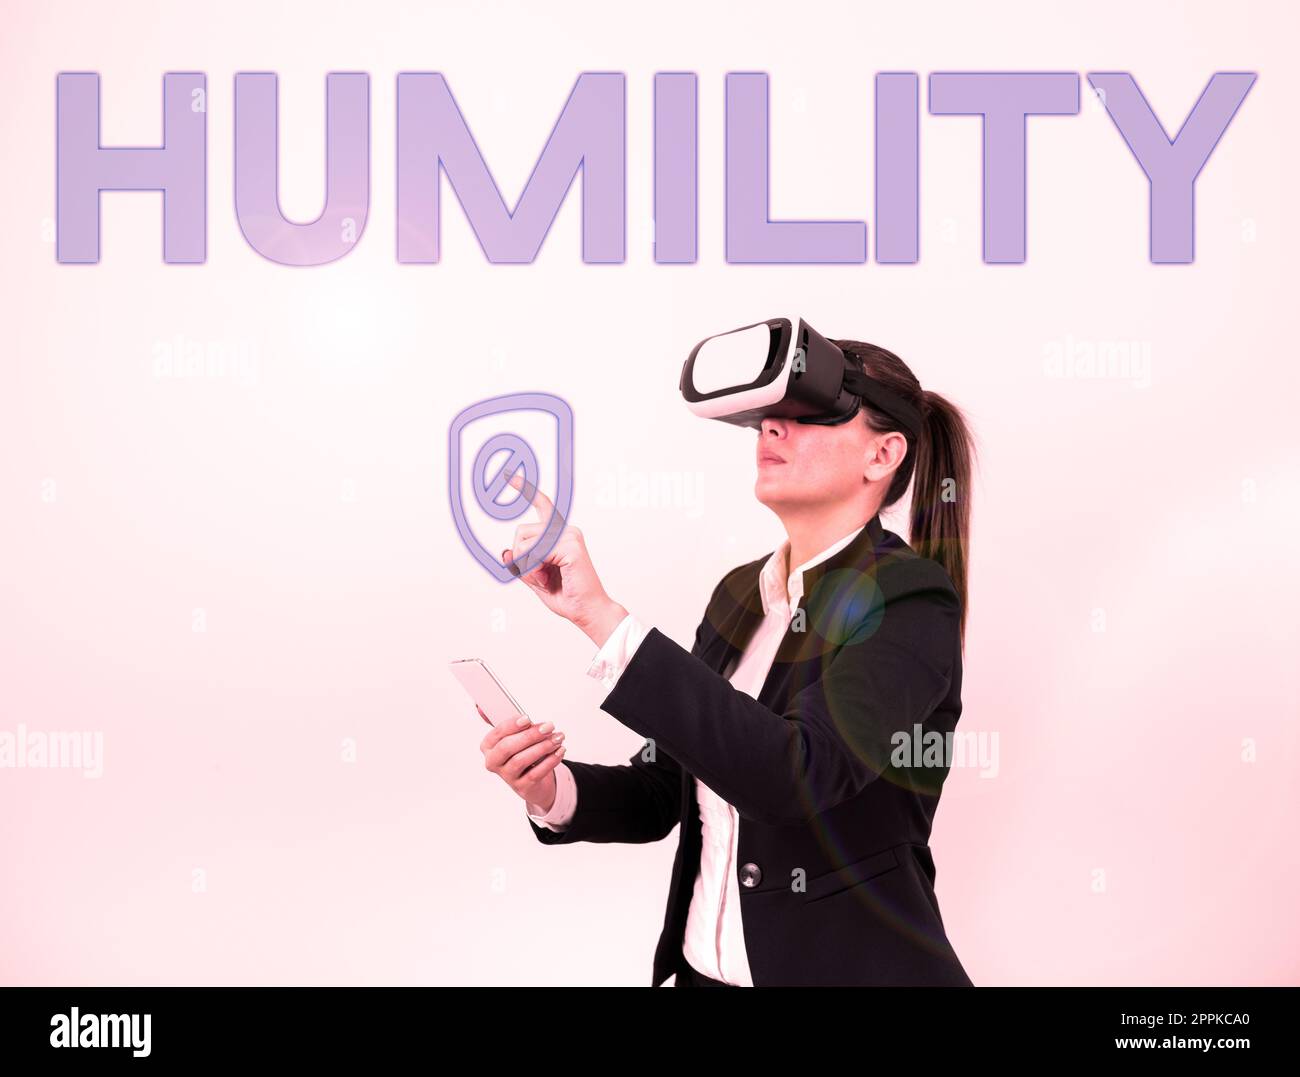 Afficher l'humilité conceptuelle. Le mot pour être humble est une vertu de ne pas se sentir trop supérieur Banque D'Images